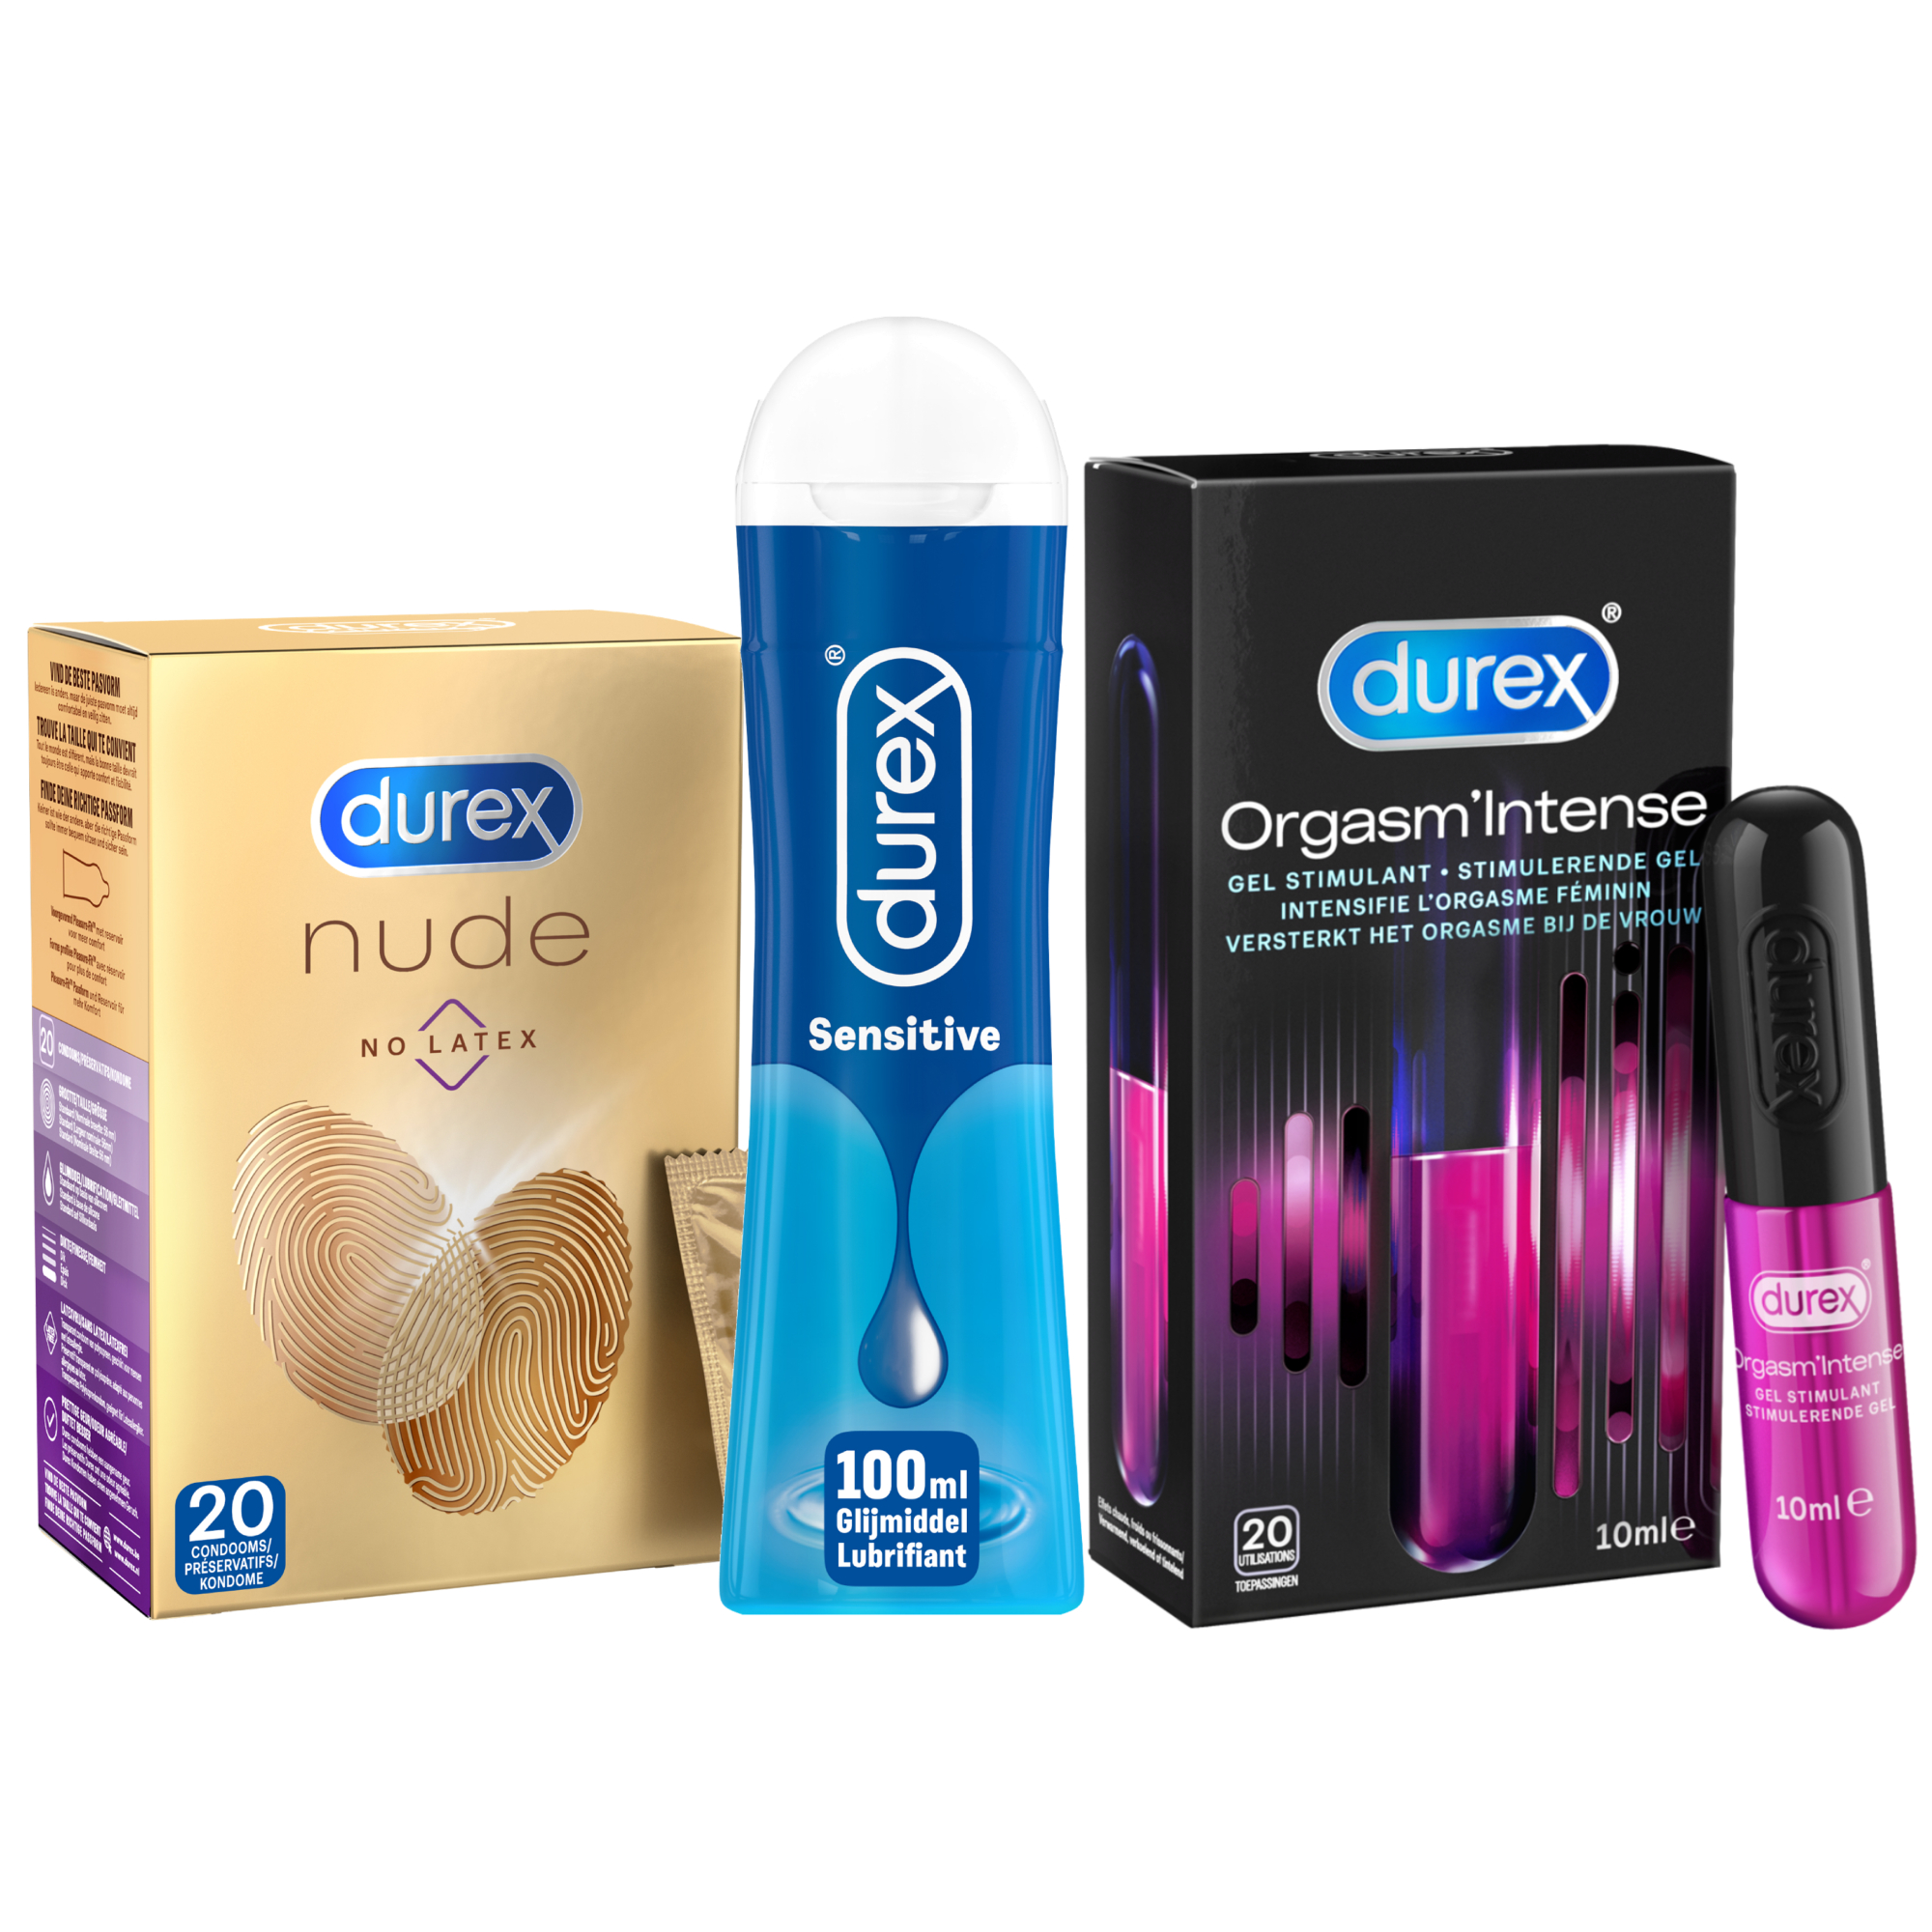 Durex Durex 20 Stuks Condooms Nude No Latex 110ml Glijmiddel